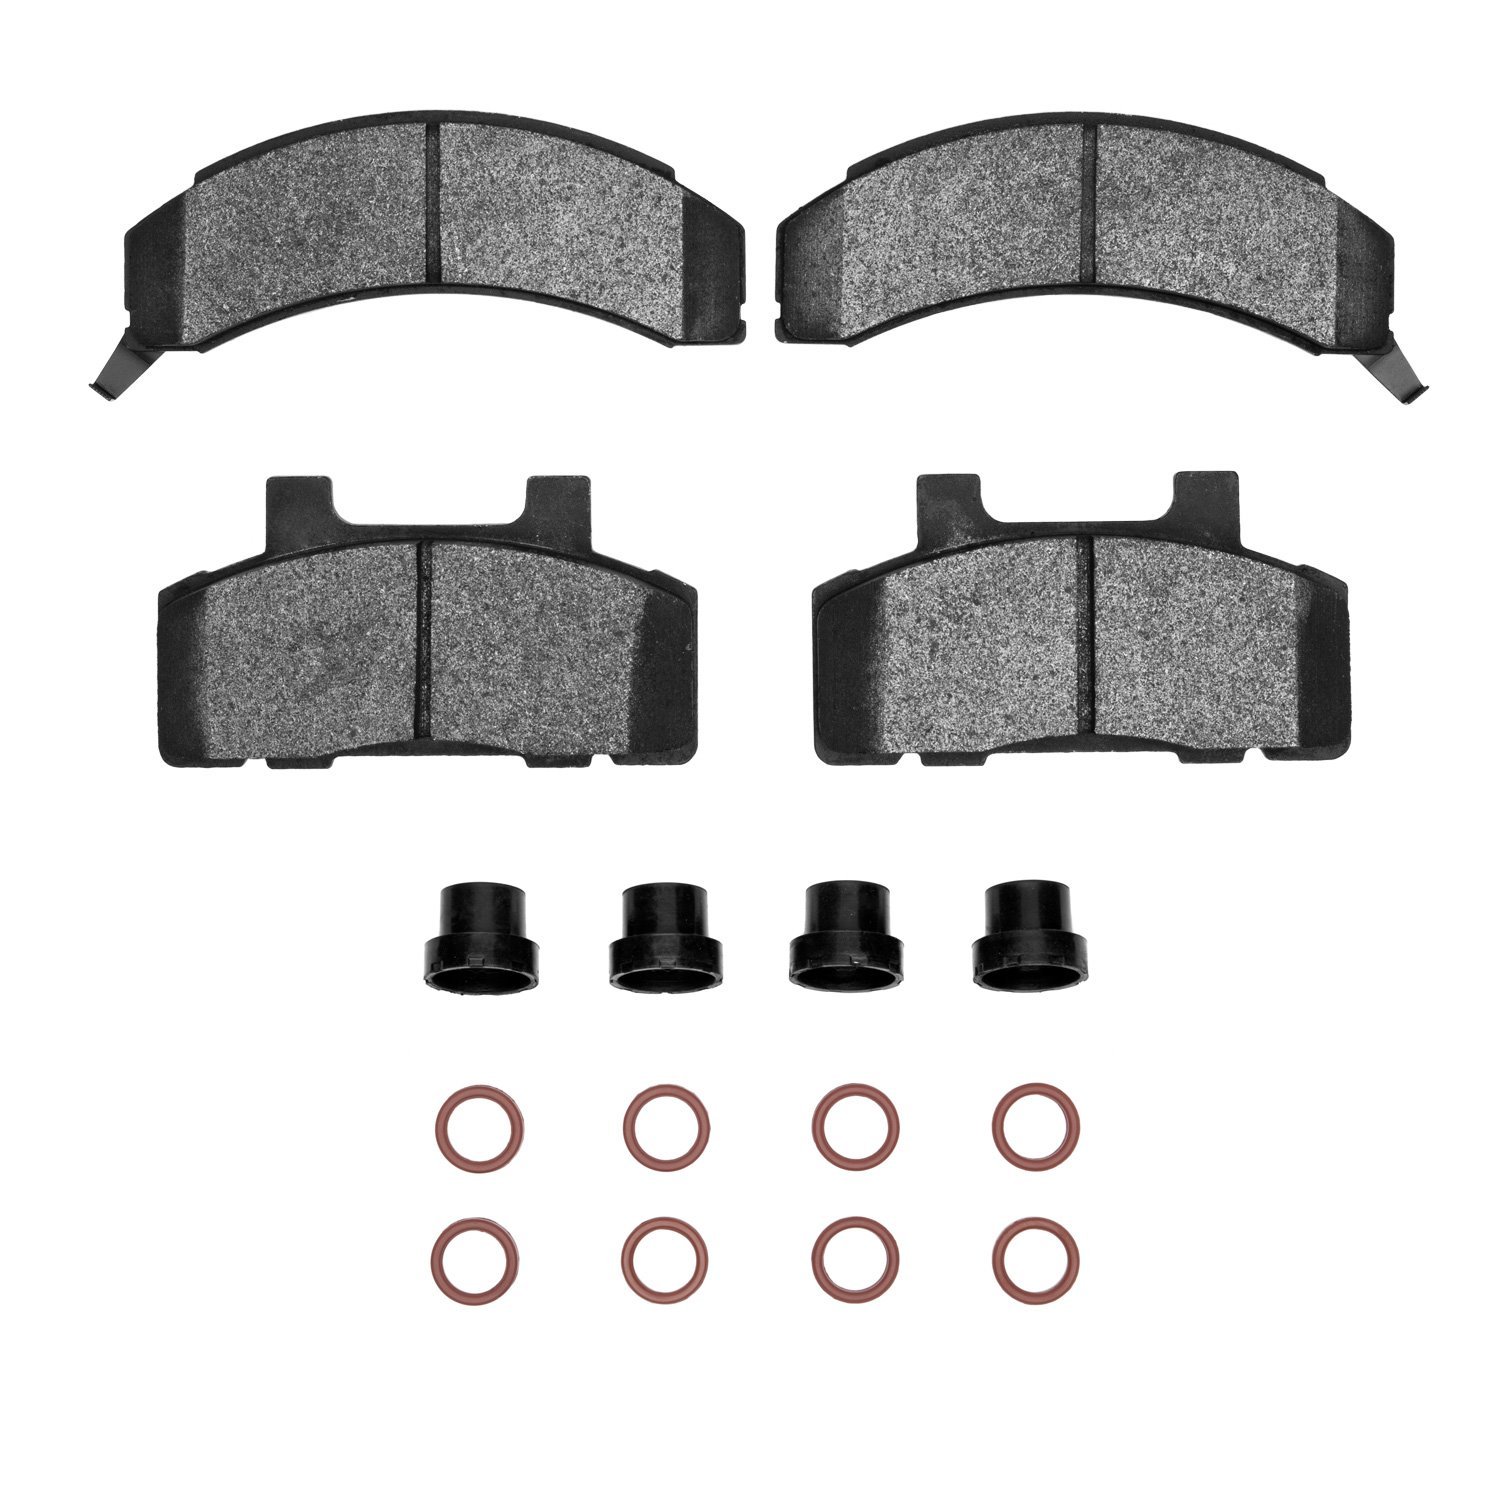 1311-0215-02 3000-Series Semi-Metallic Brake Pads & Hardware Kit, 1983-1990 GM, Position: Front